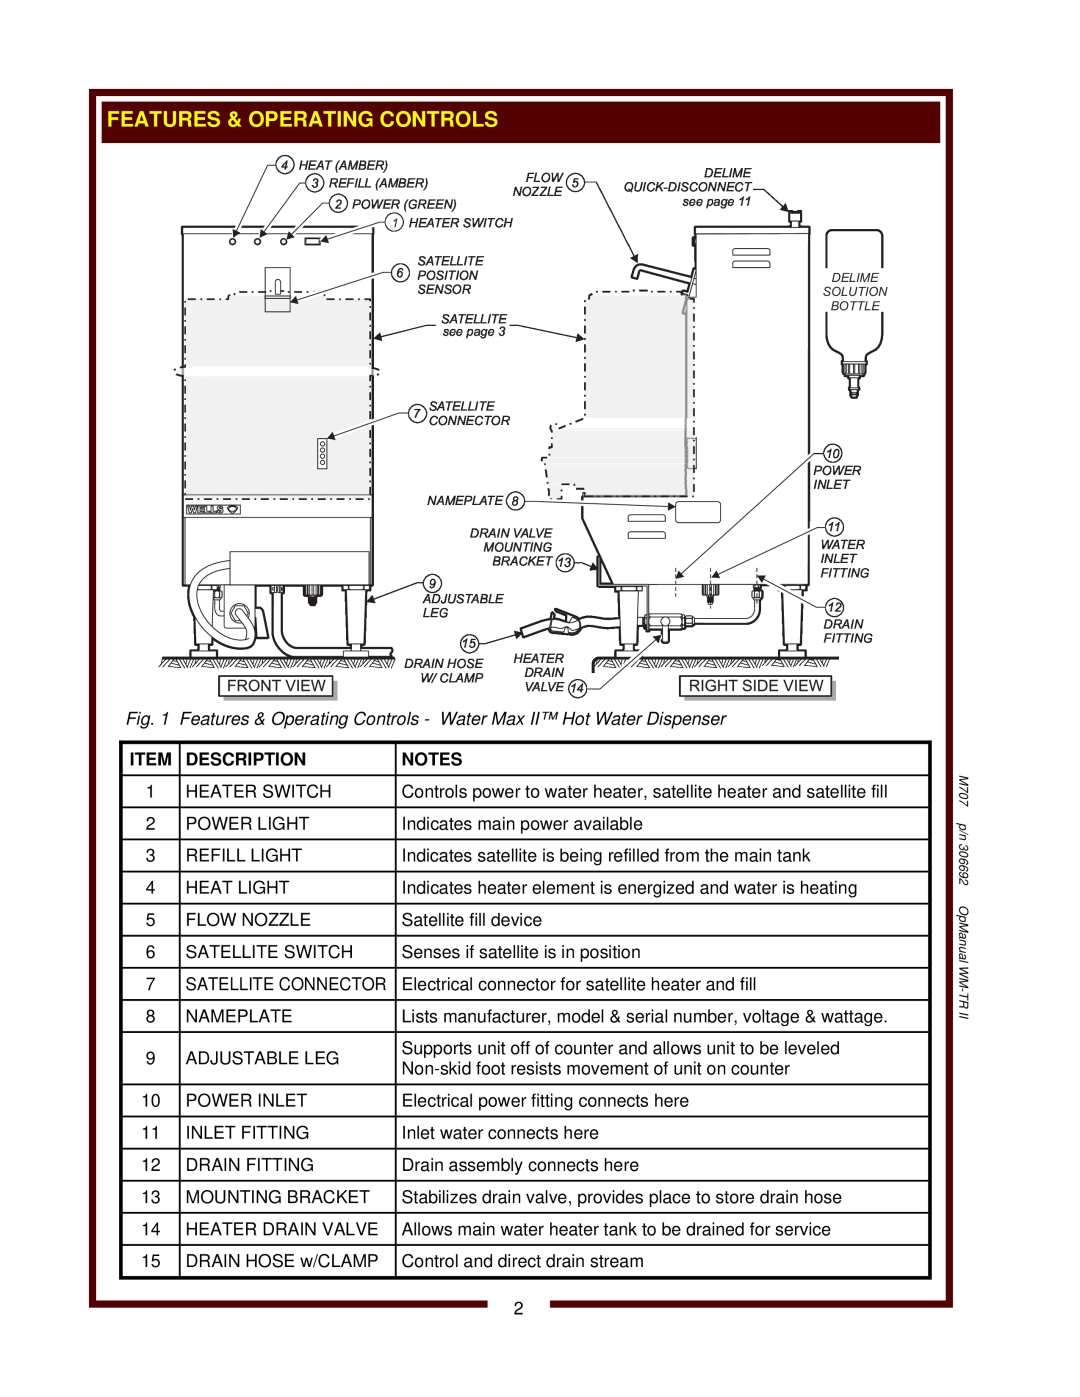 Wells WM-TR II operation manual Description 